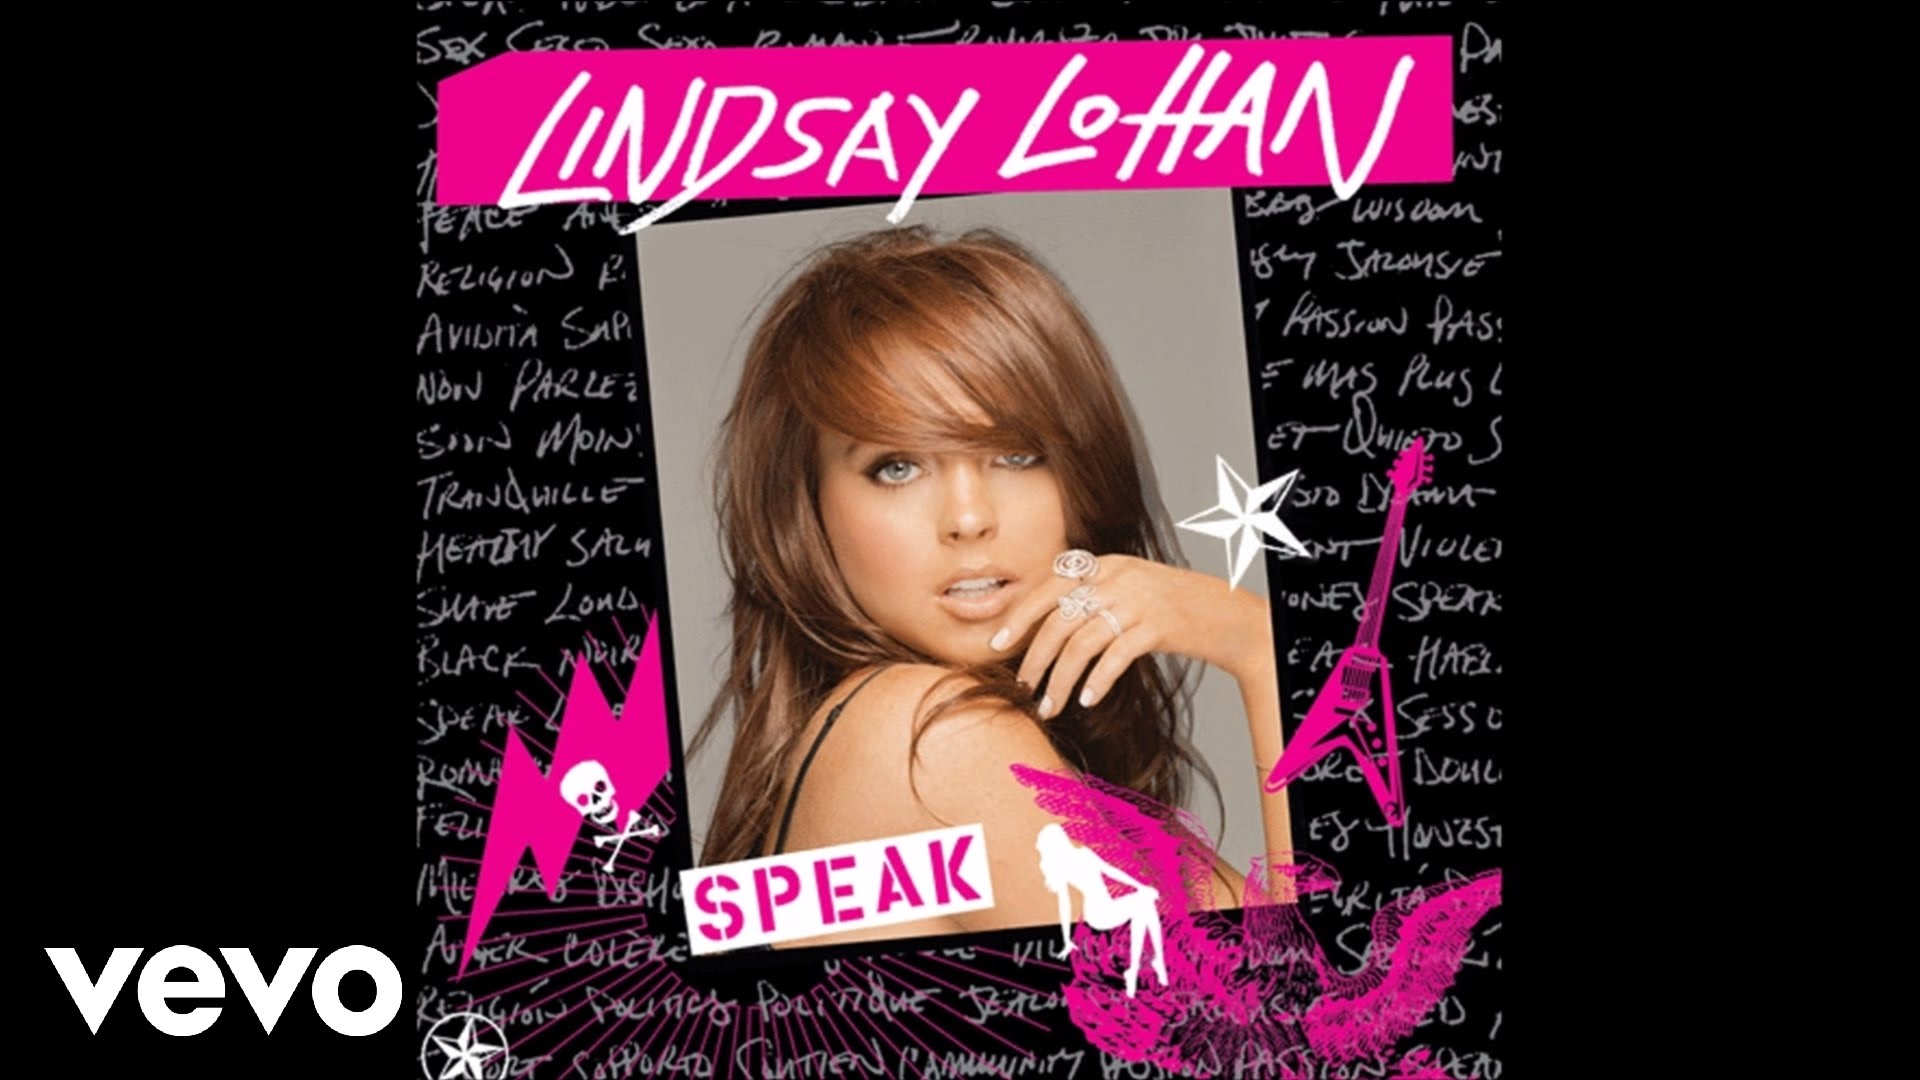 Lindsay Lohan - To Know Your Name